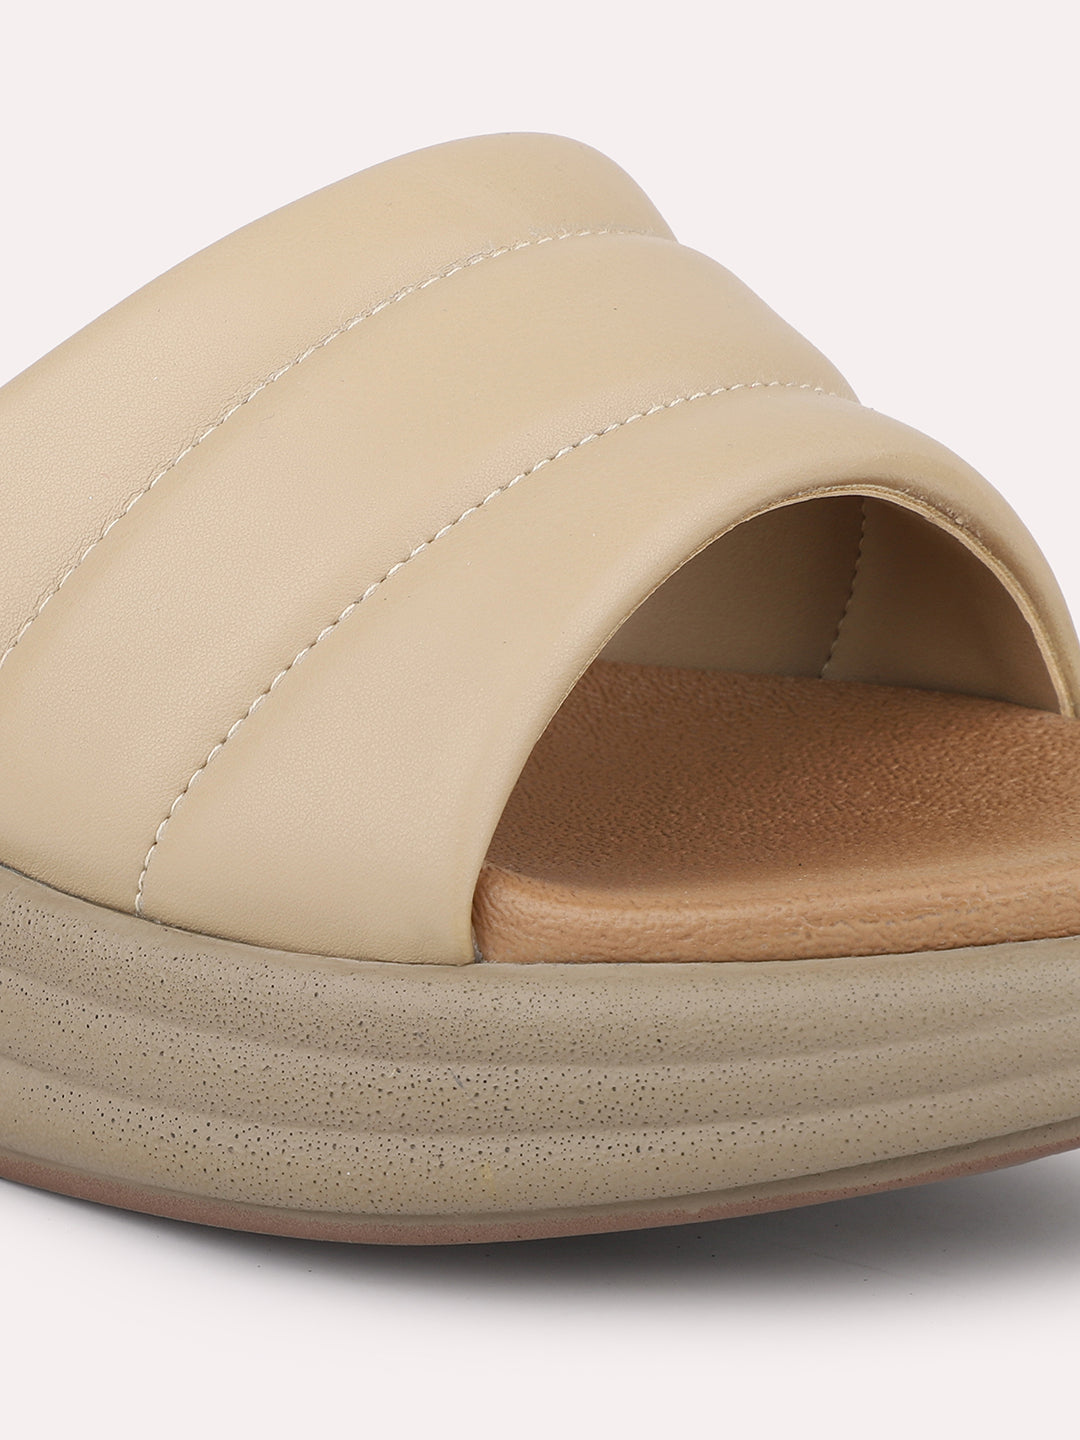 Women Beige Textured Open Toe Comfort Sandals